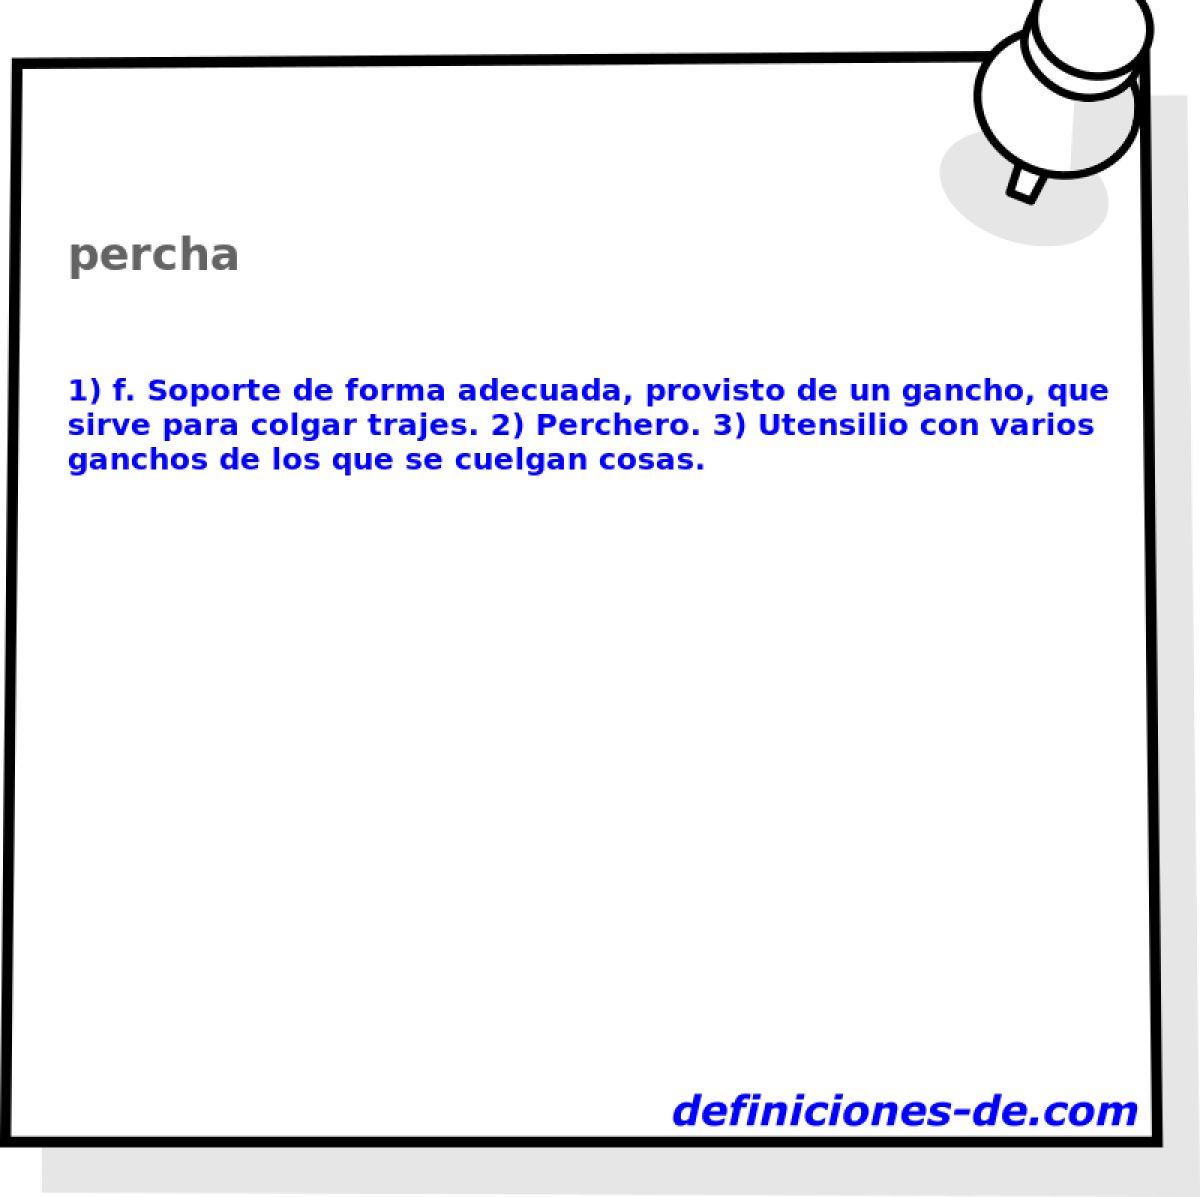 percha 